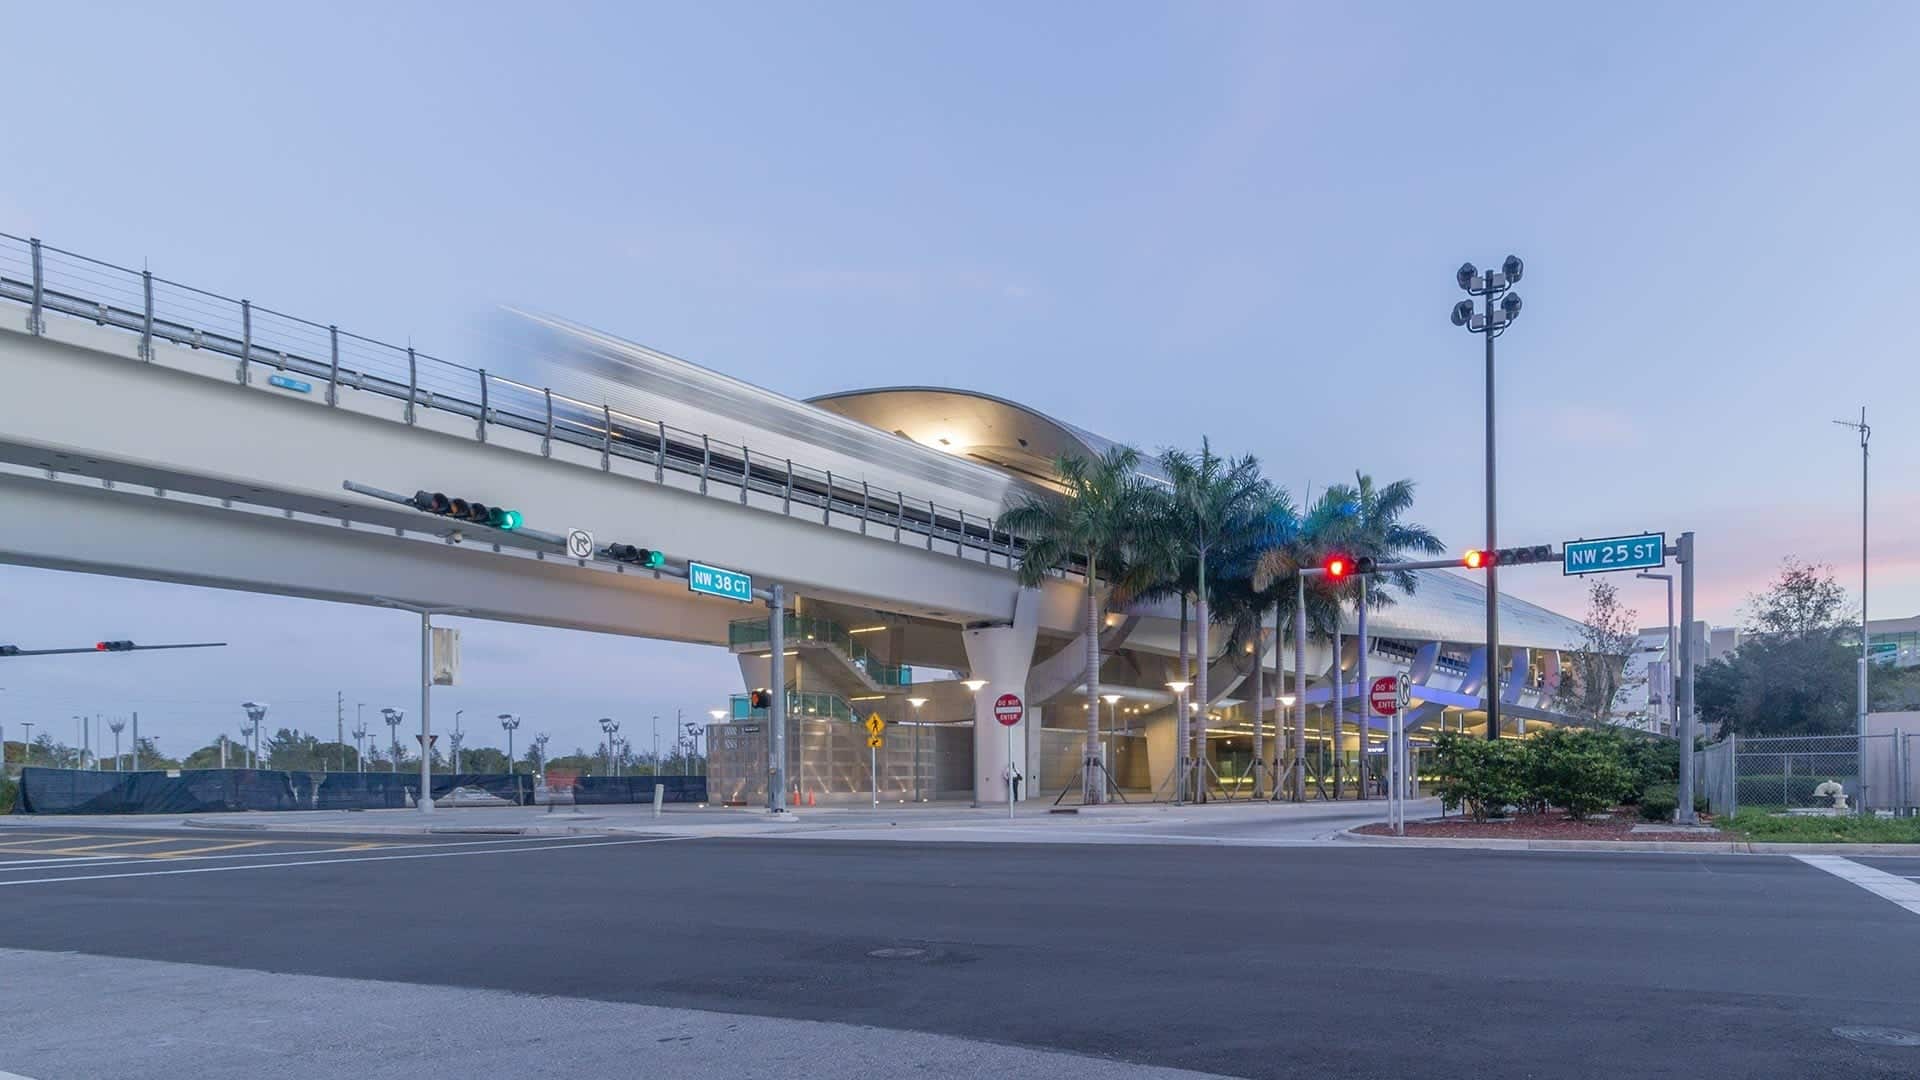 Photograph of a train leaving the Miami Intermodal Center.